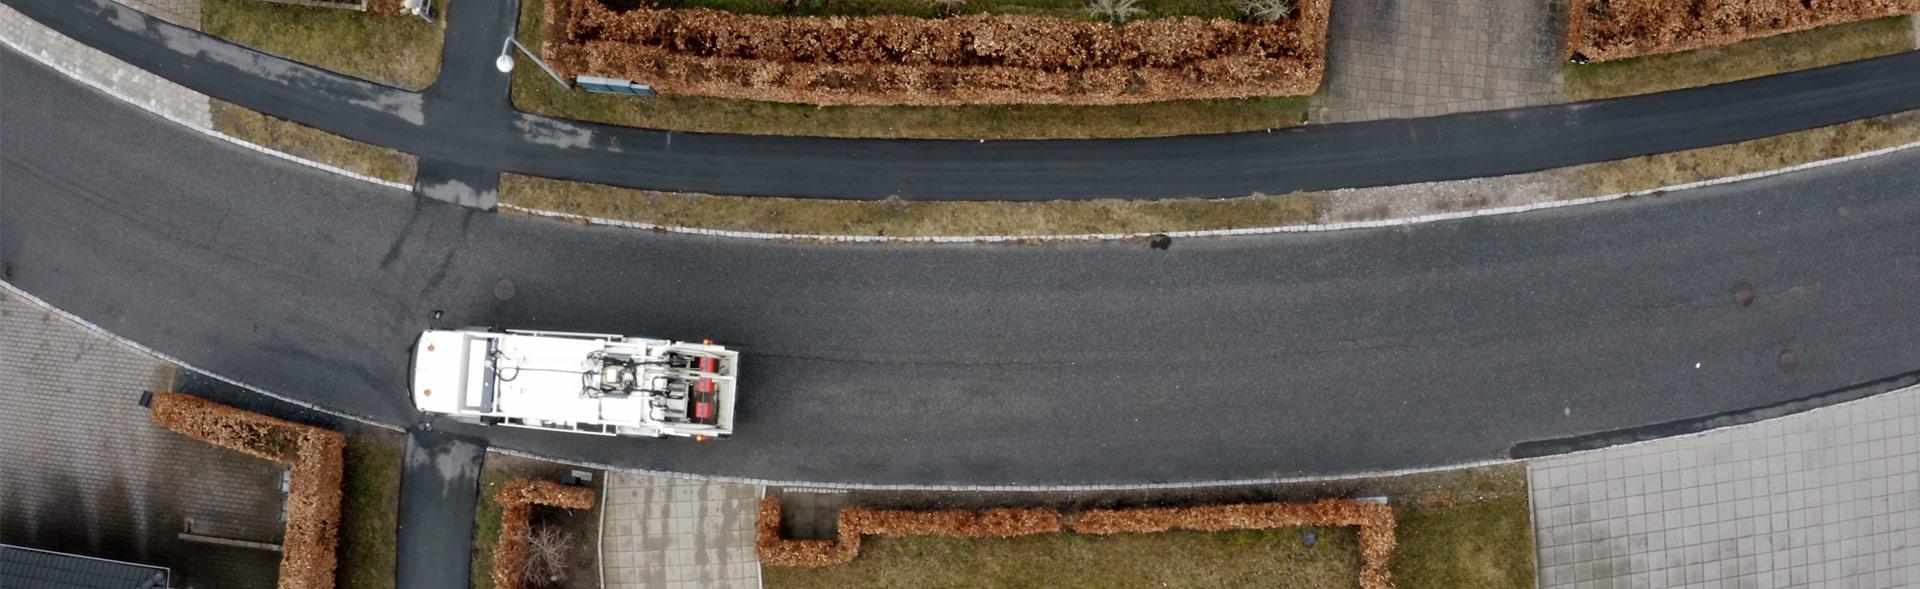 luftfoto af skraldebil der kører på villavej